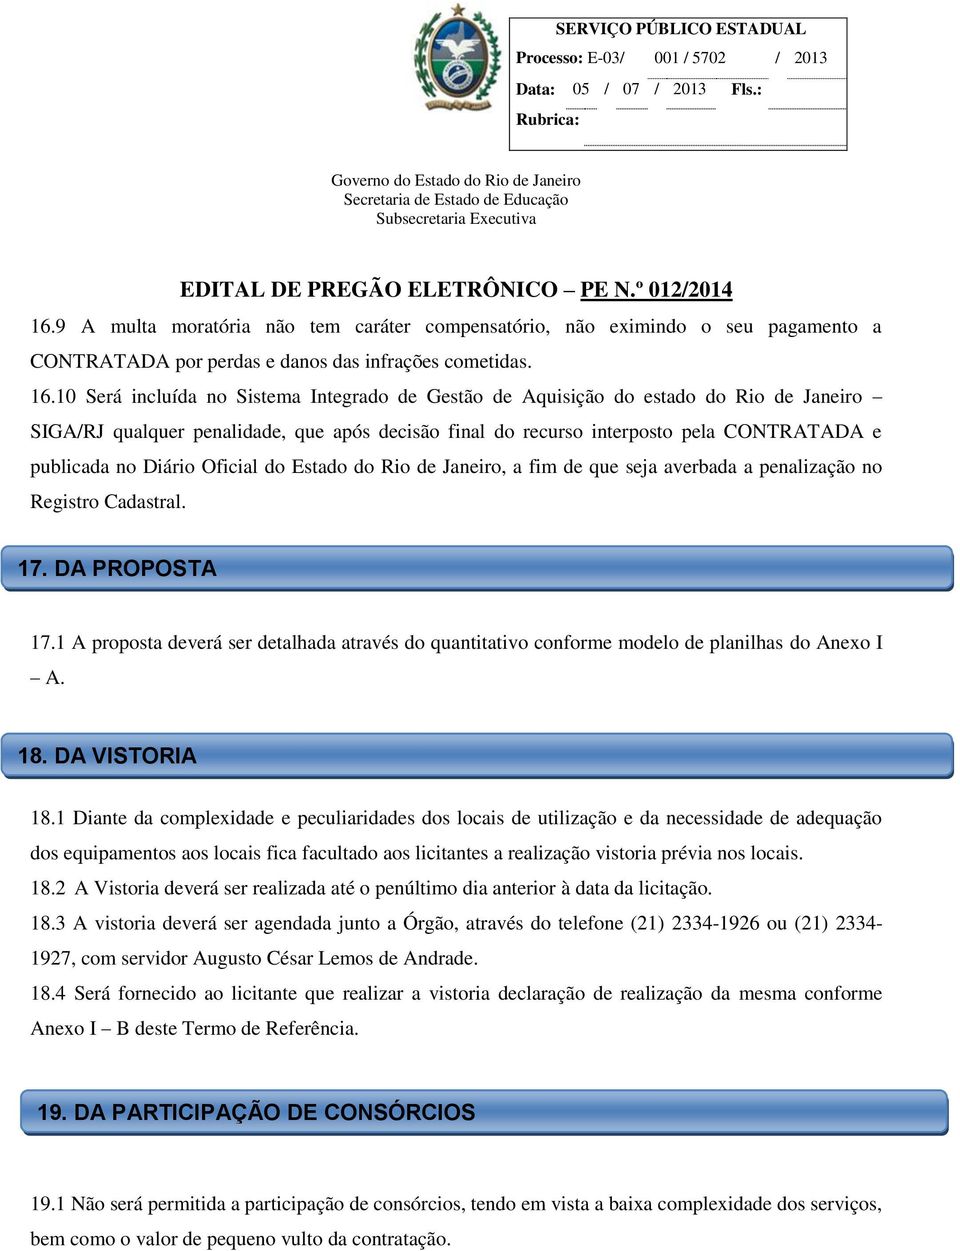 Diário Oficial do Estado do Rio de Janeiro, a fim de que seja averbada a penalização no Registro Cadastral. 17. DA PROPOSTA 17.